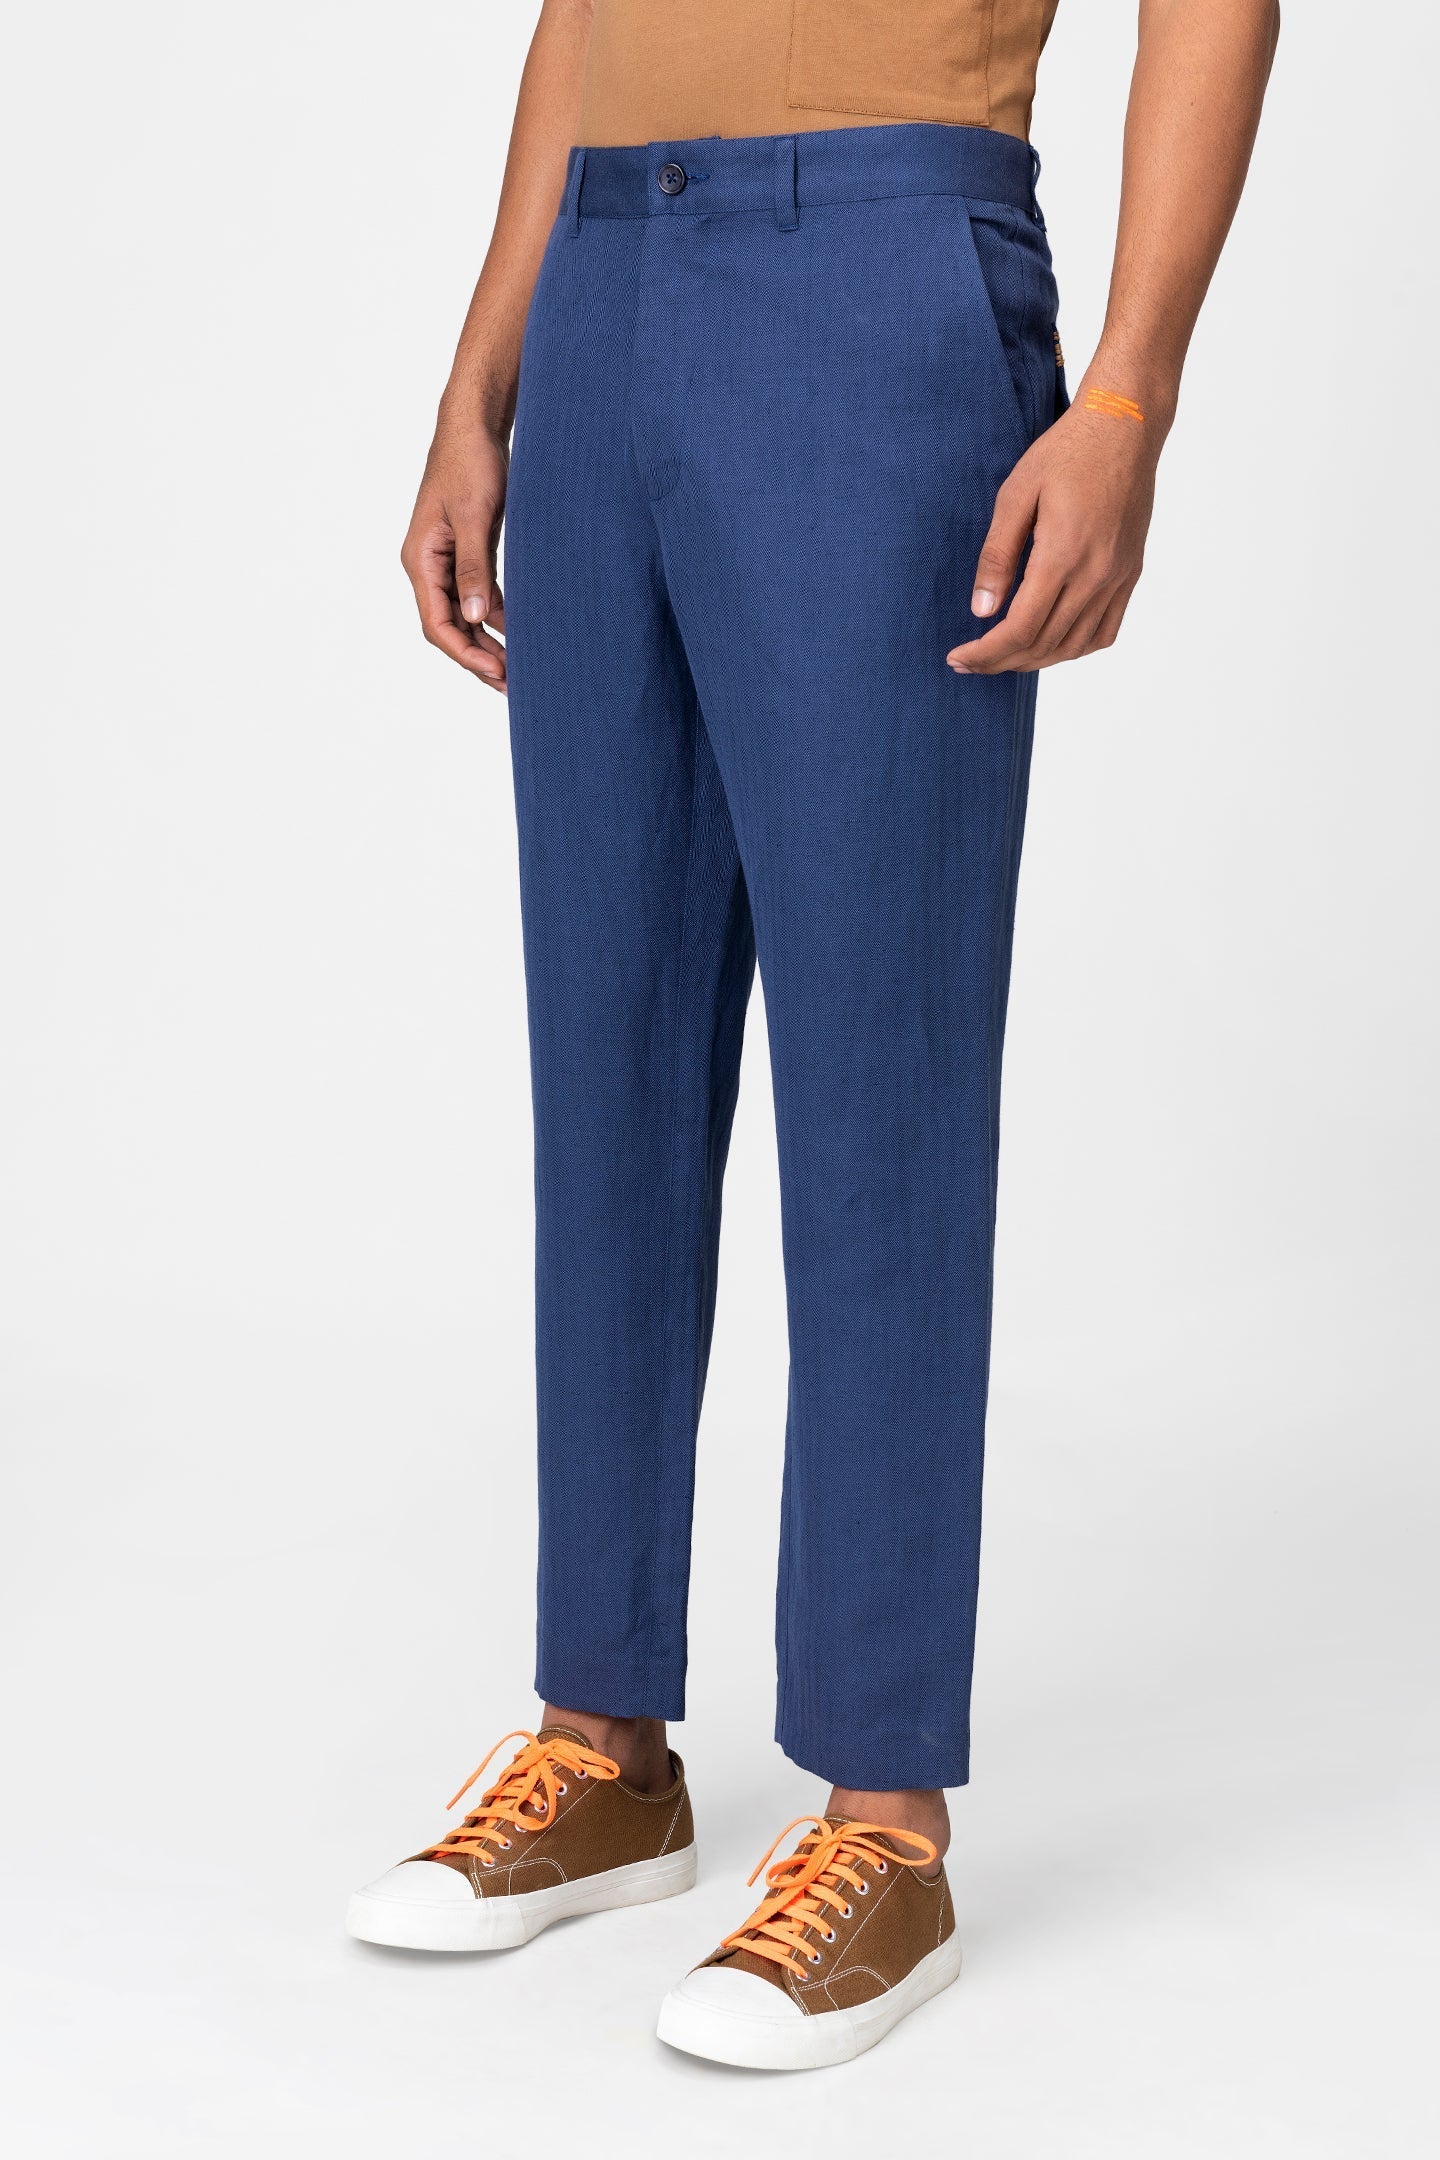 linen-pants - Genes online store 2020